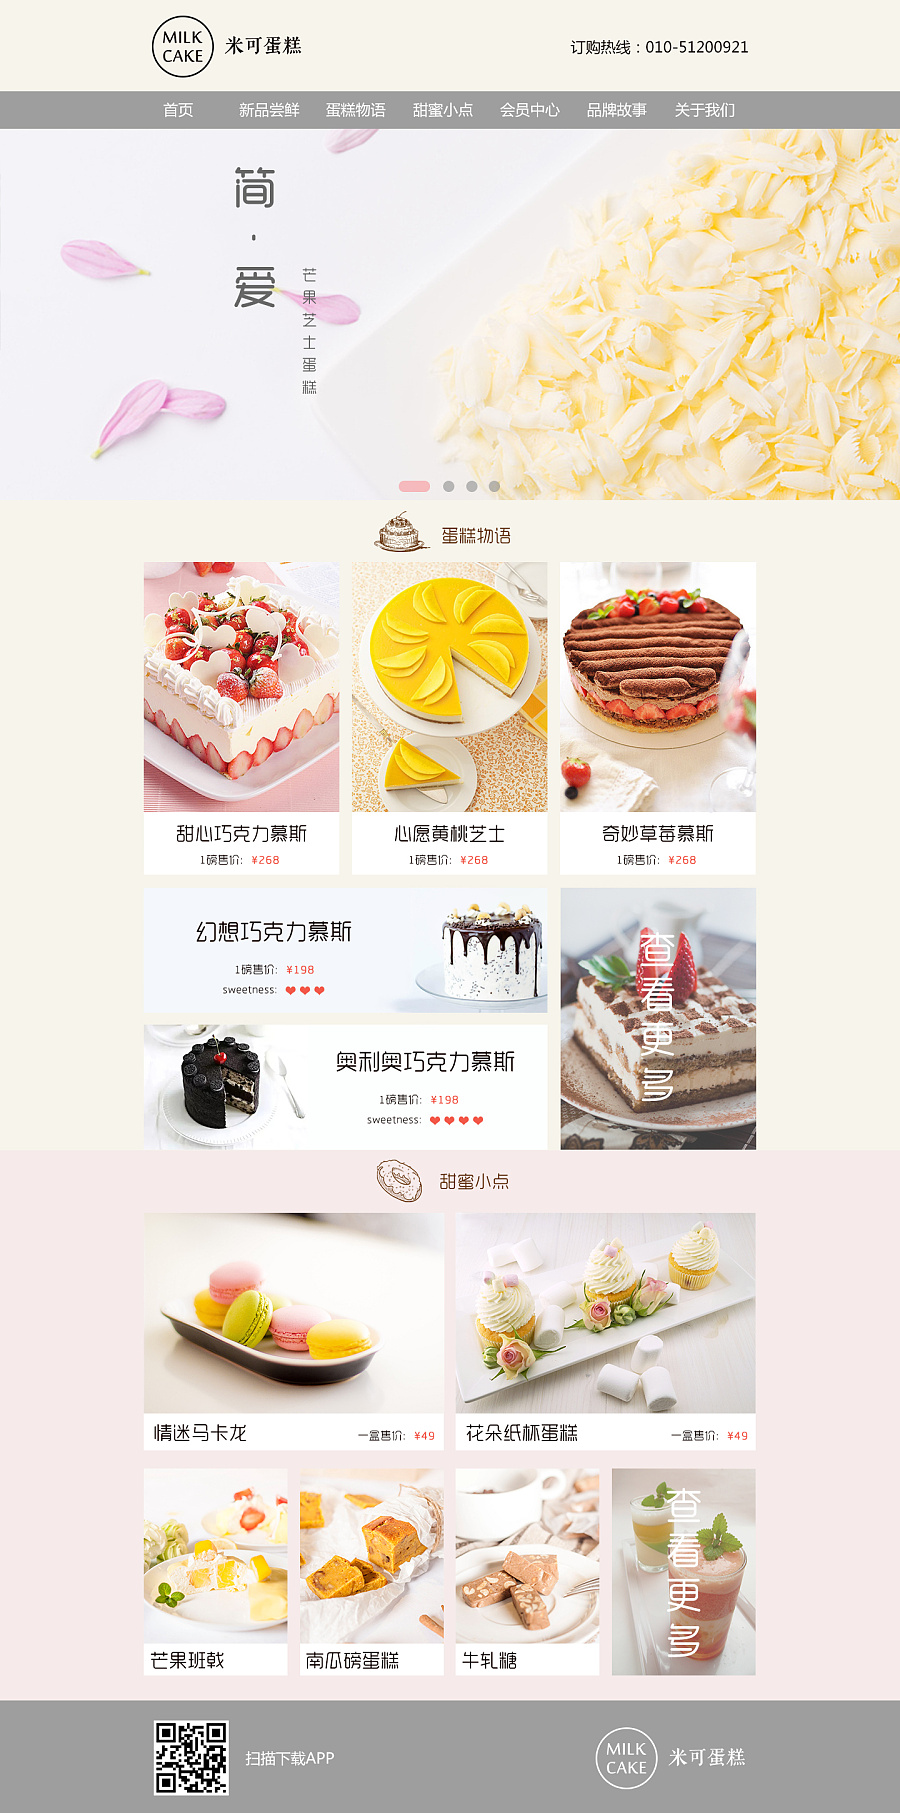 米可蛋糕网站(概念设计)